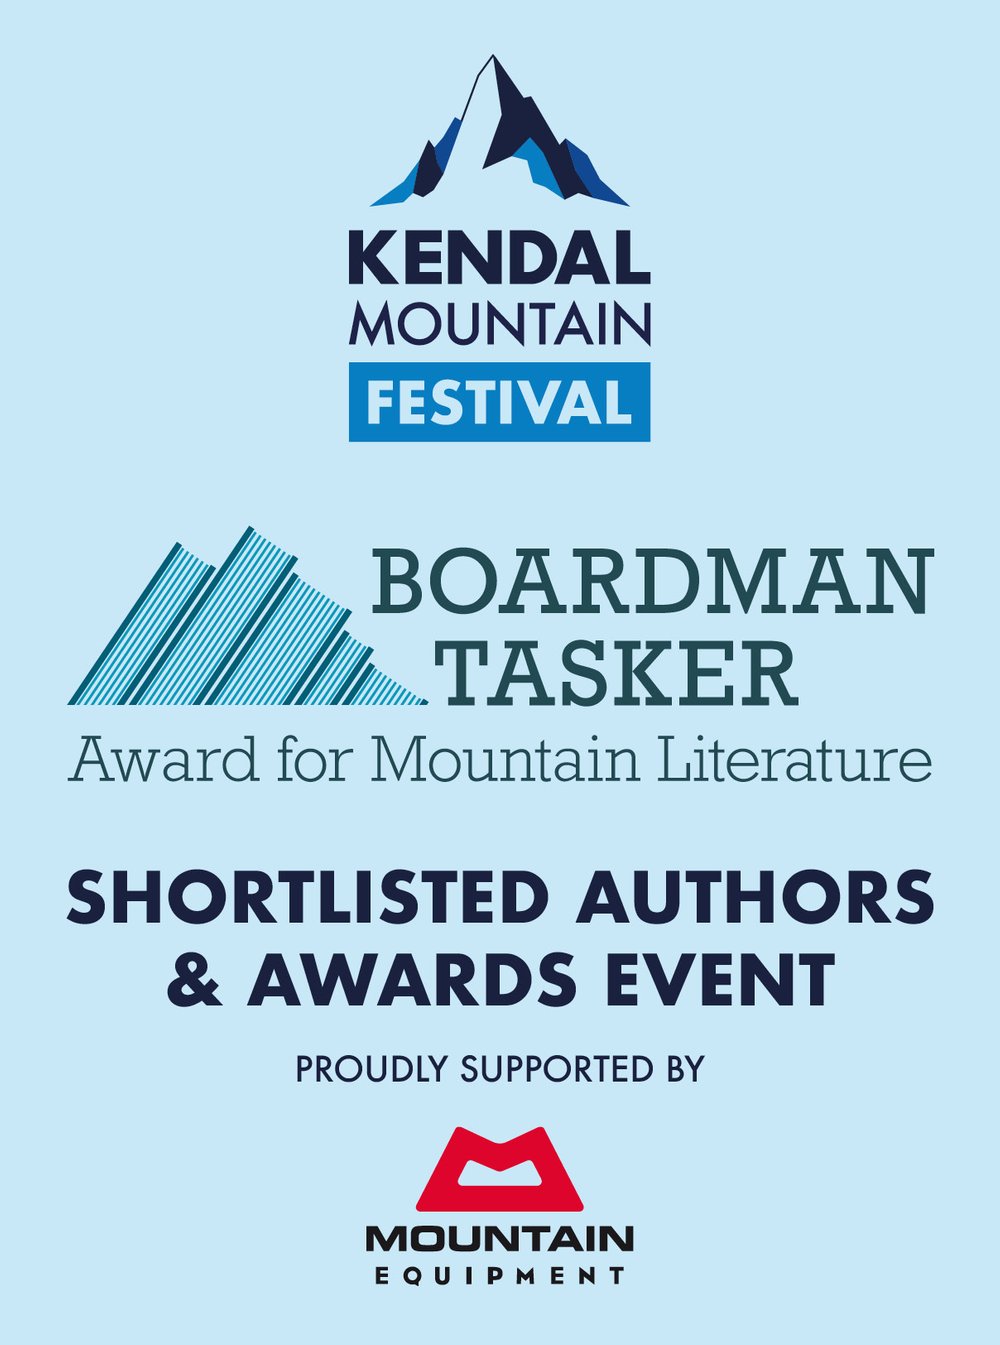 News — Boardman Tasker Prize for Literature